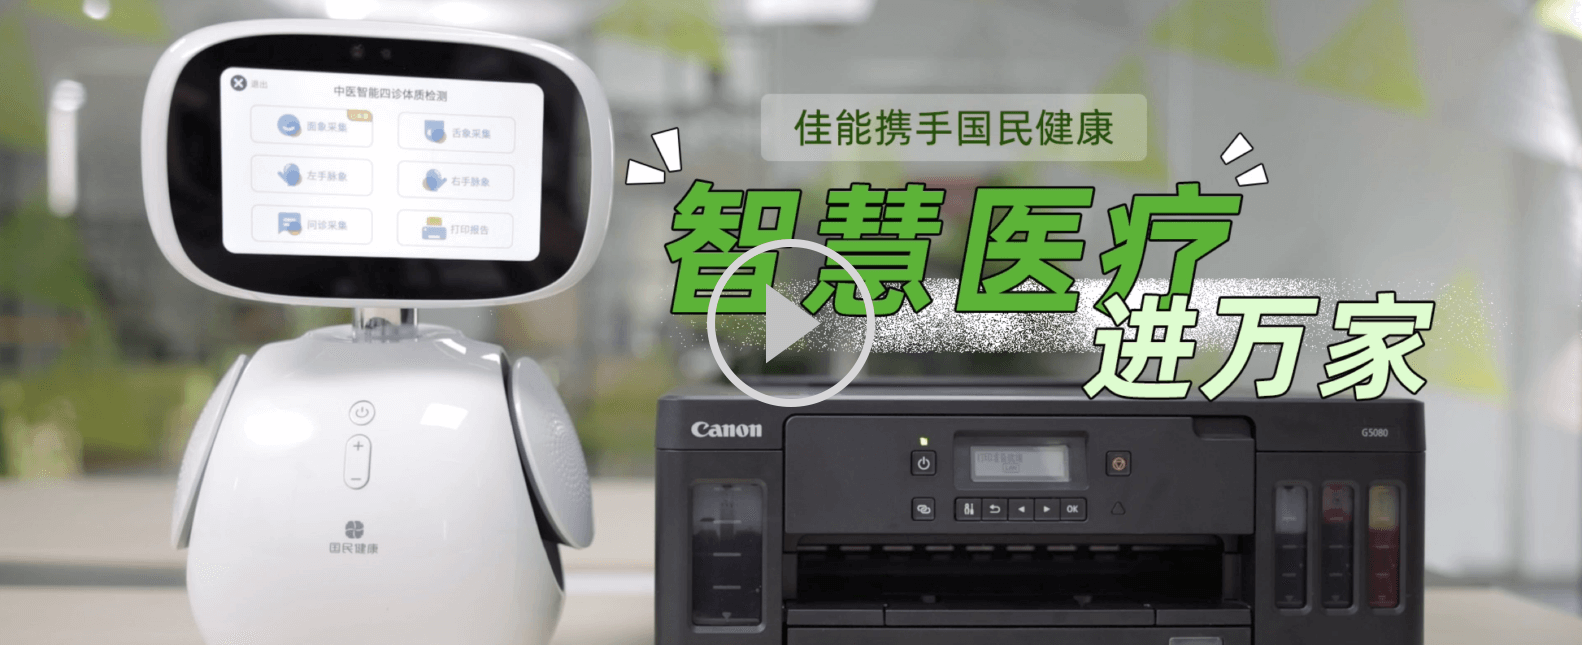 上海国民健康小康助手机器人